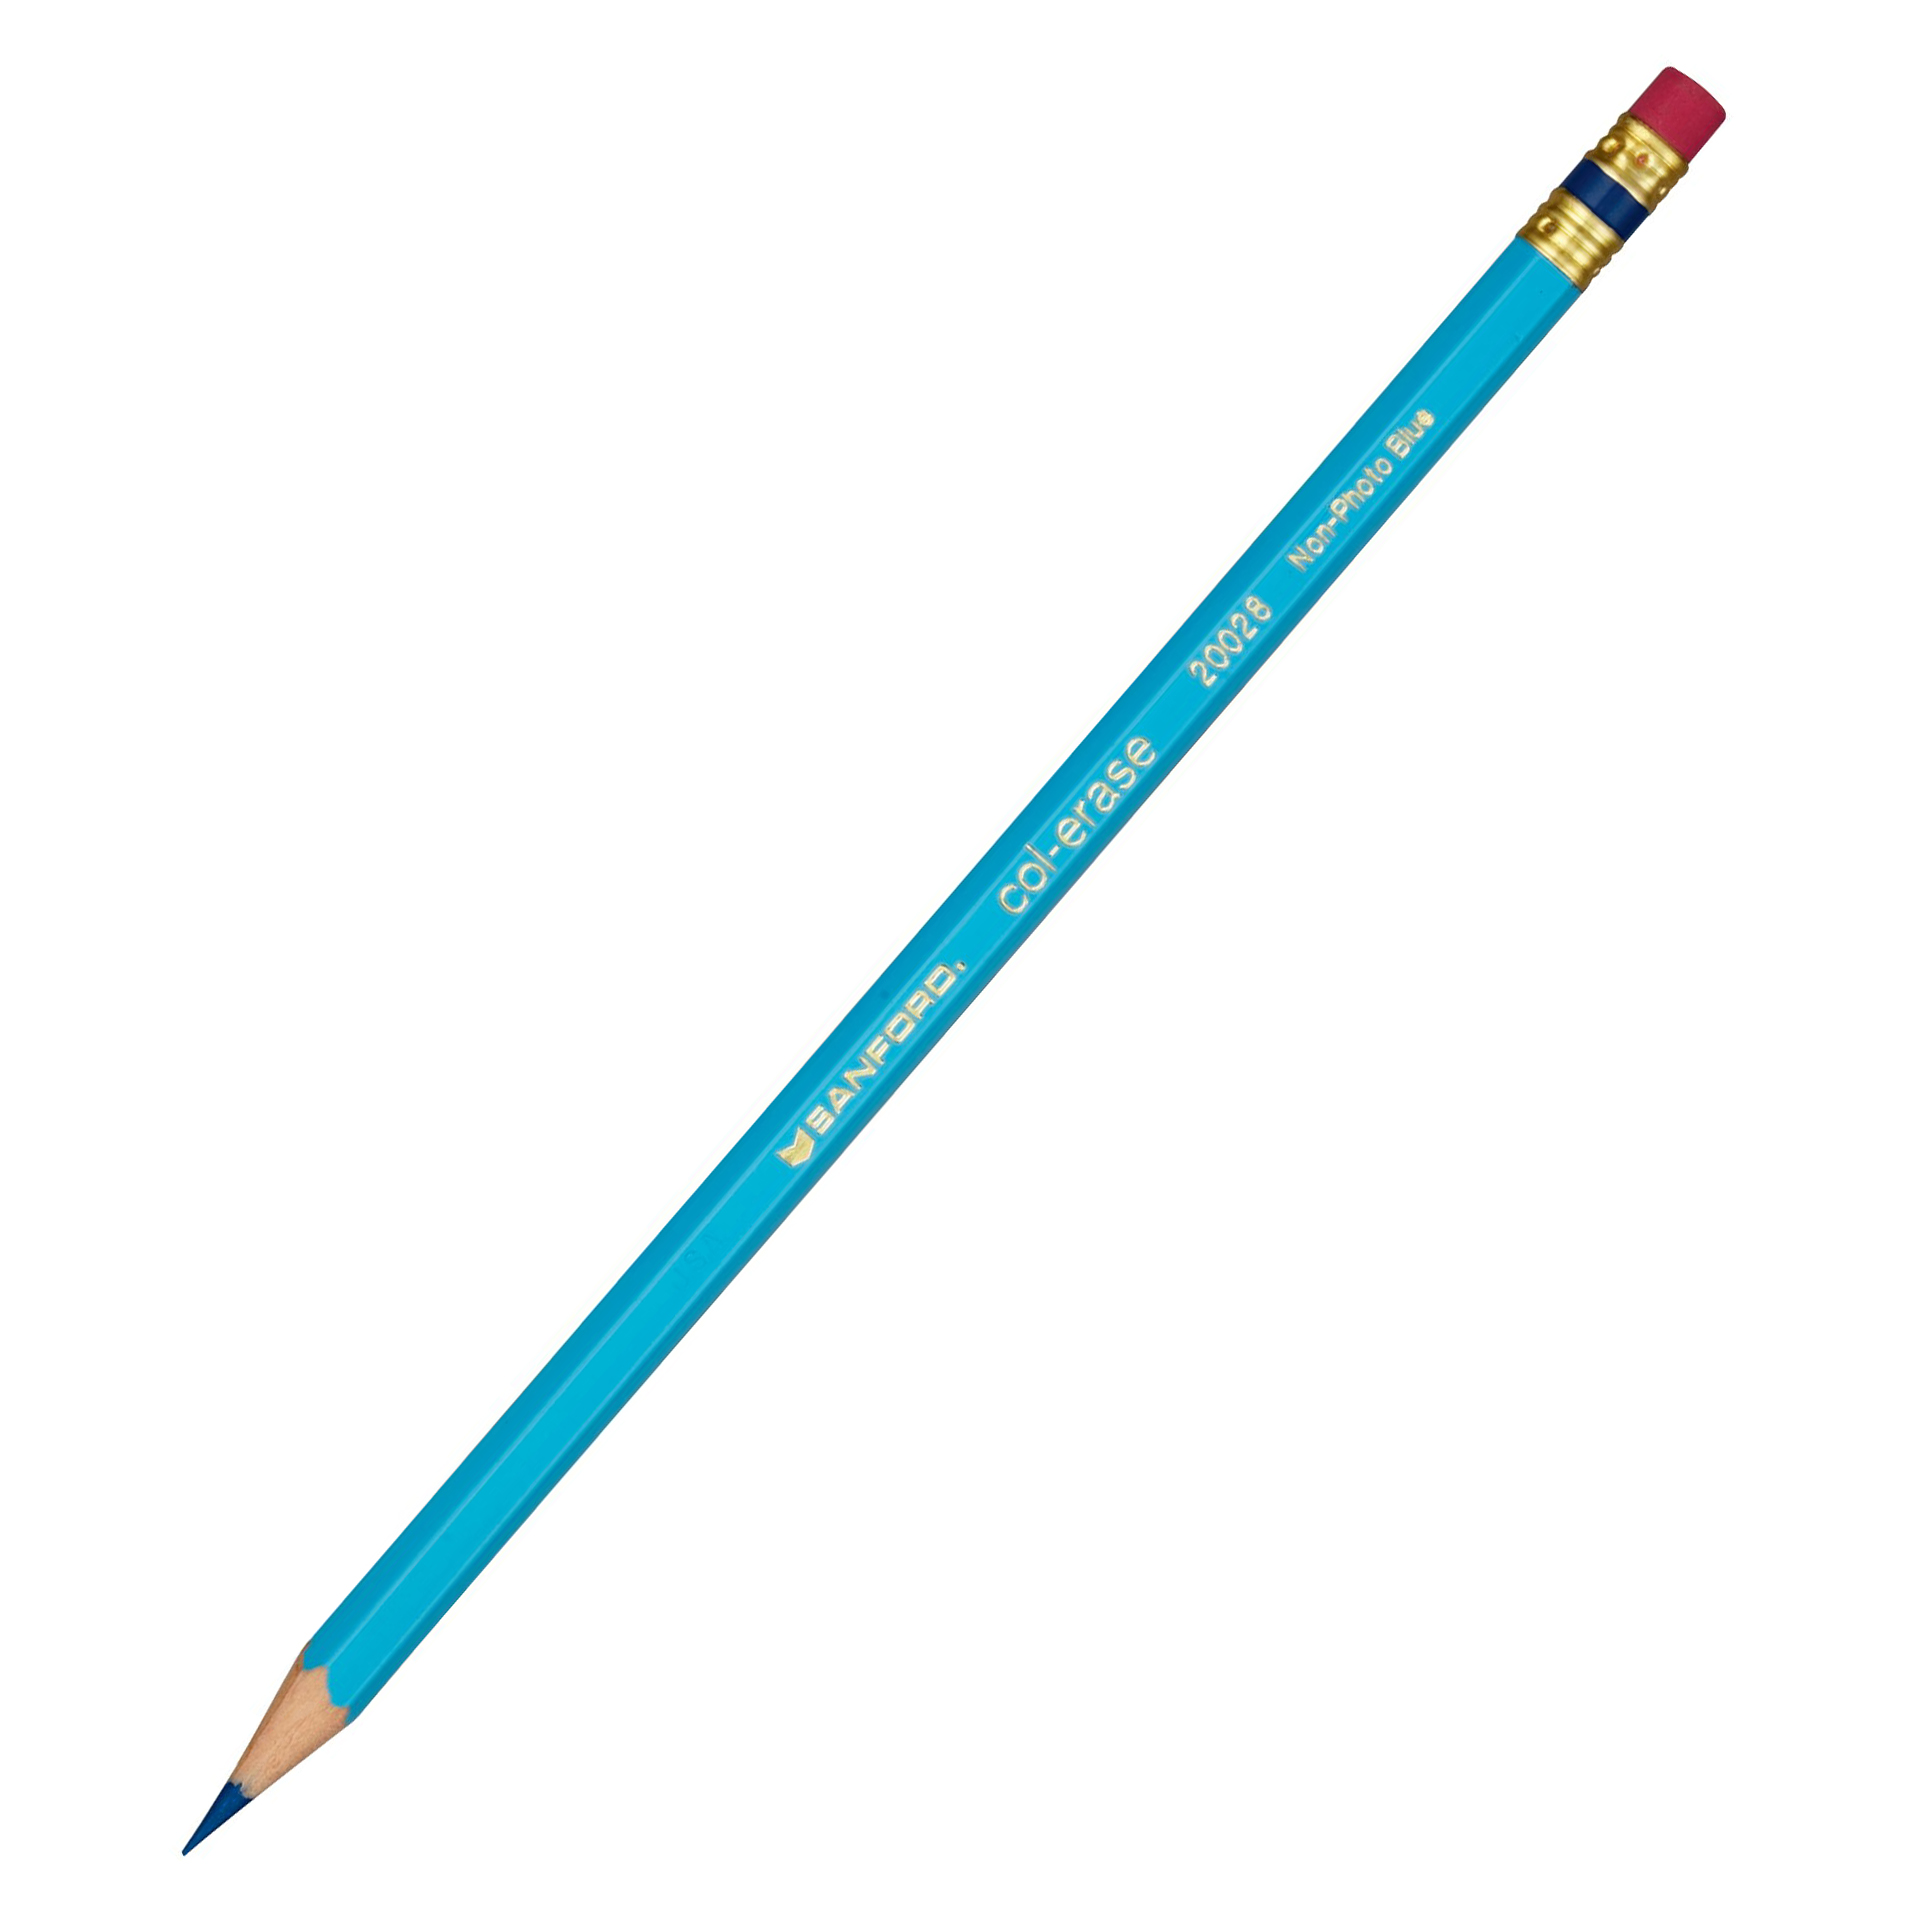 Col-Erase Colored Pencil - Non-Photo Blue